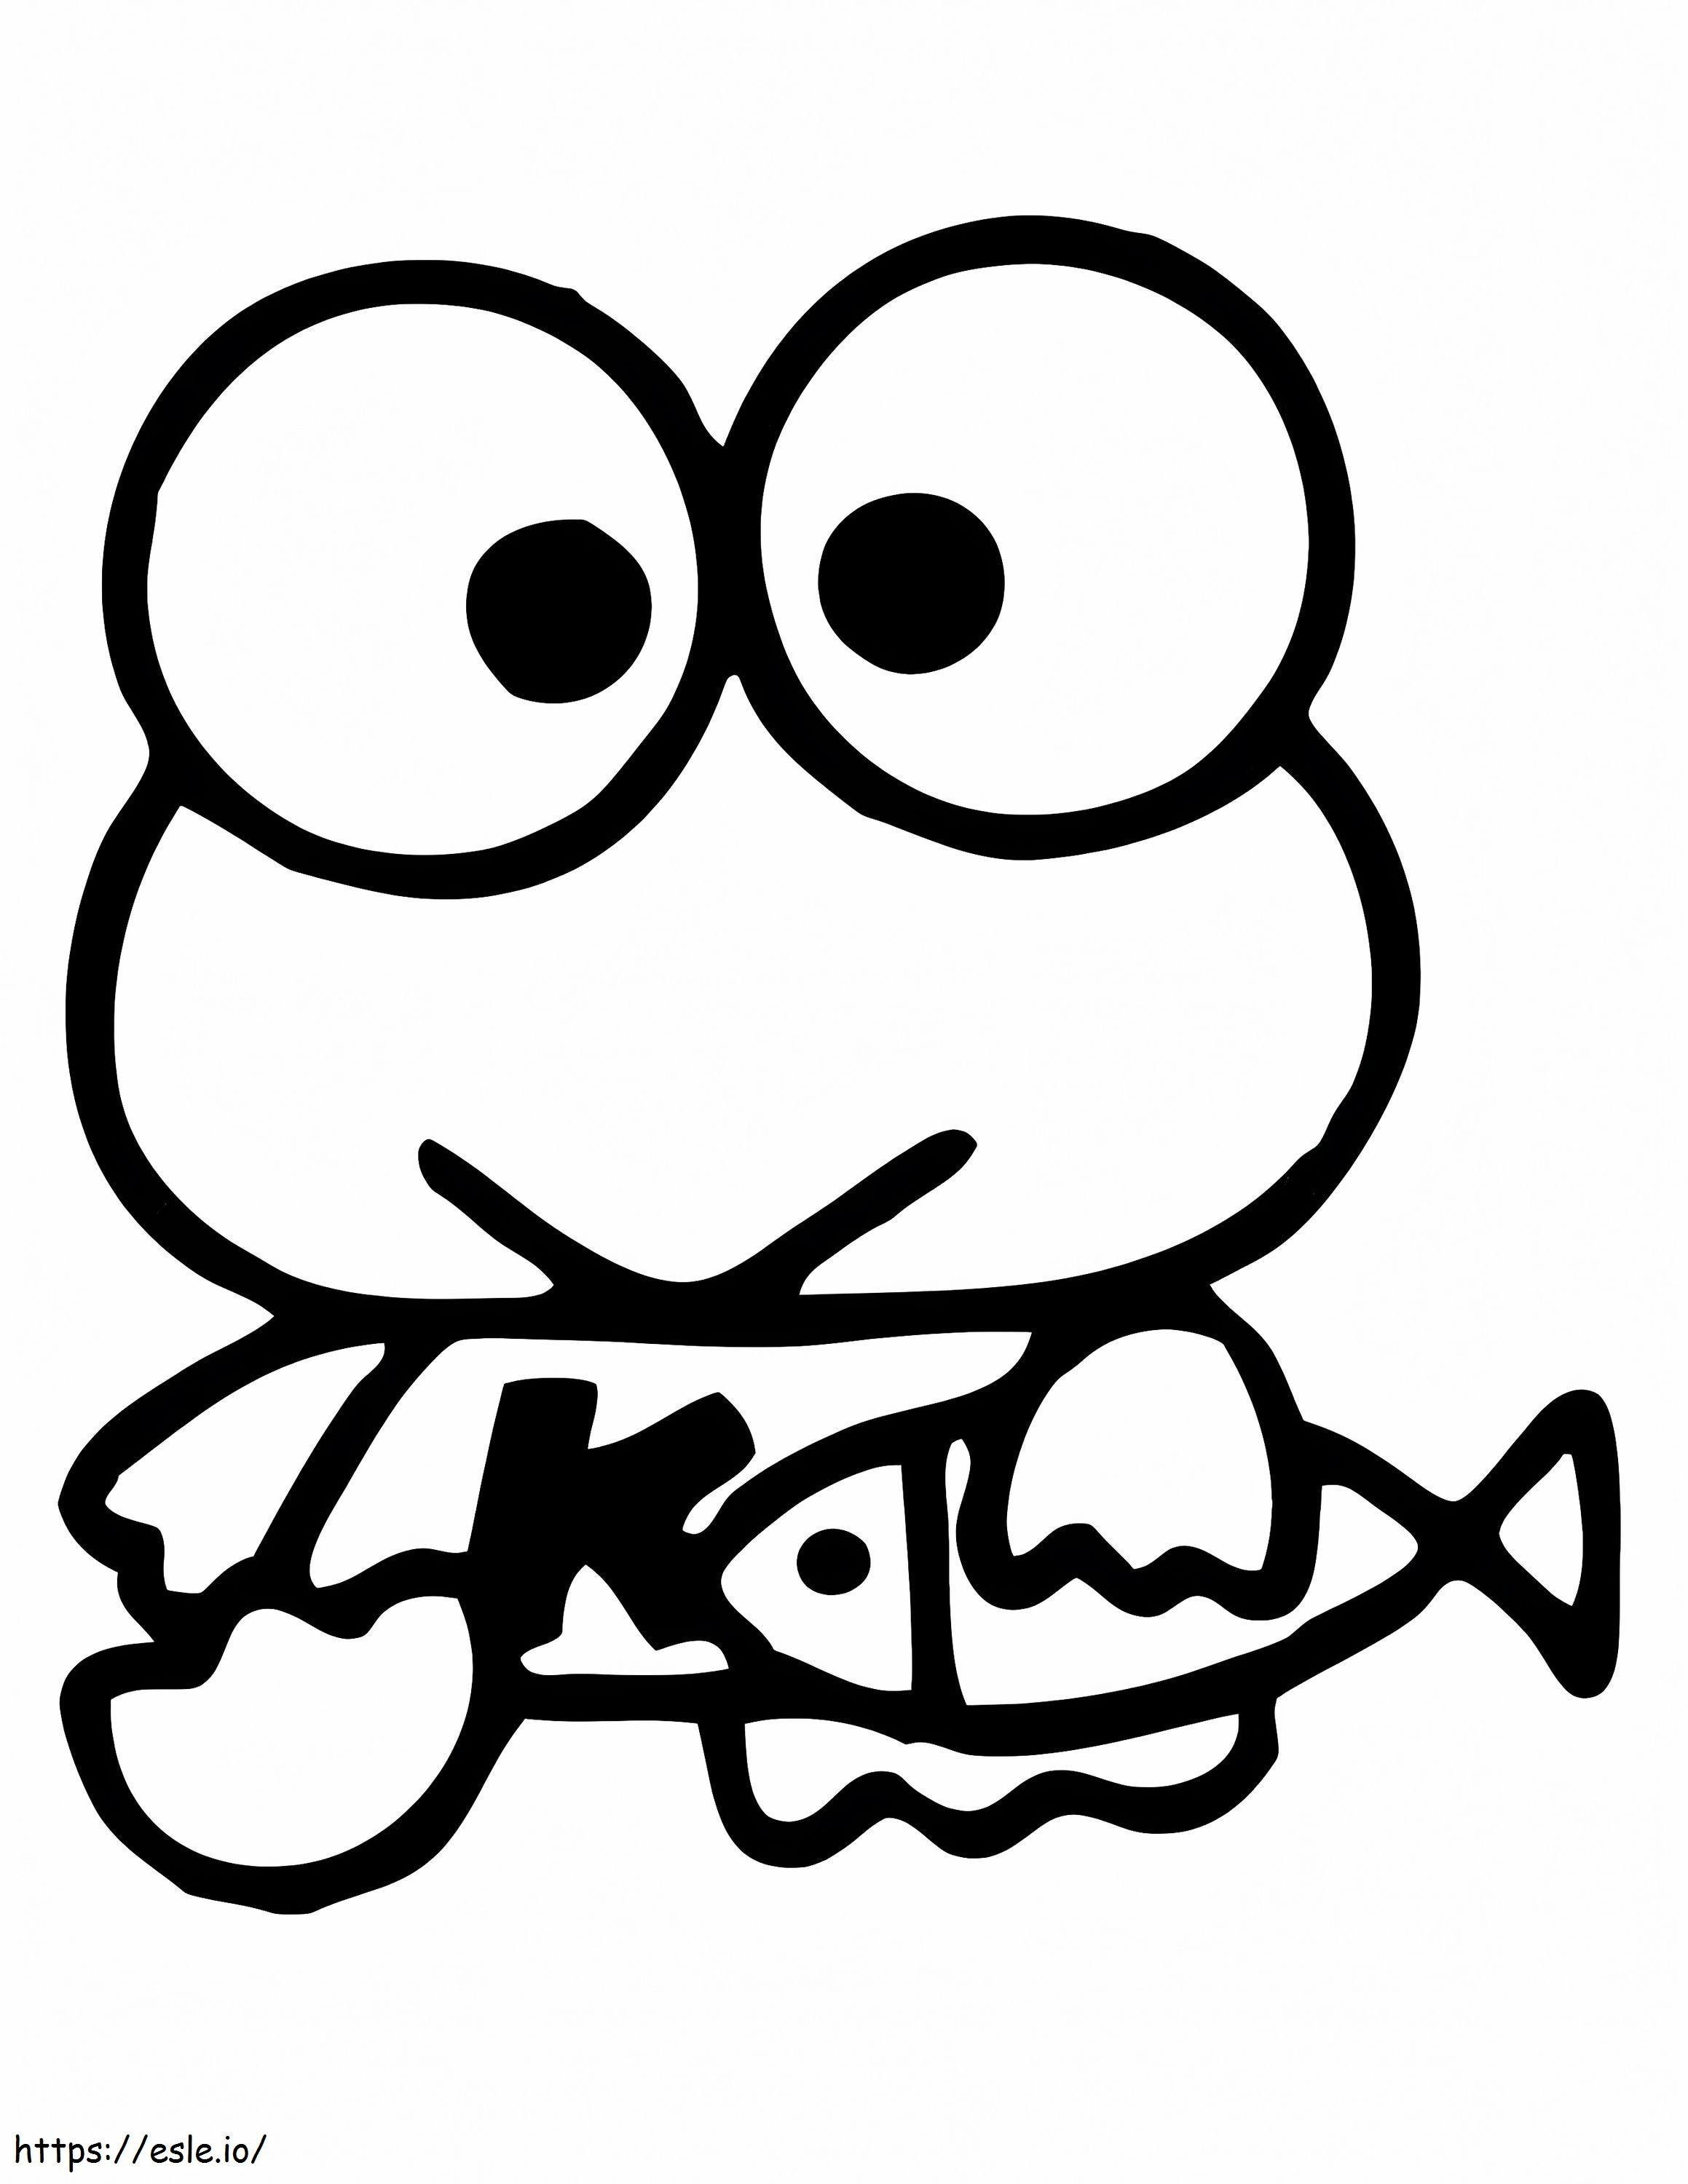 Keroppi com um peixe para colorir